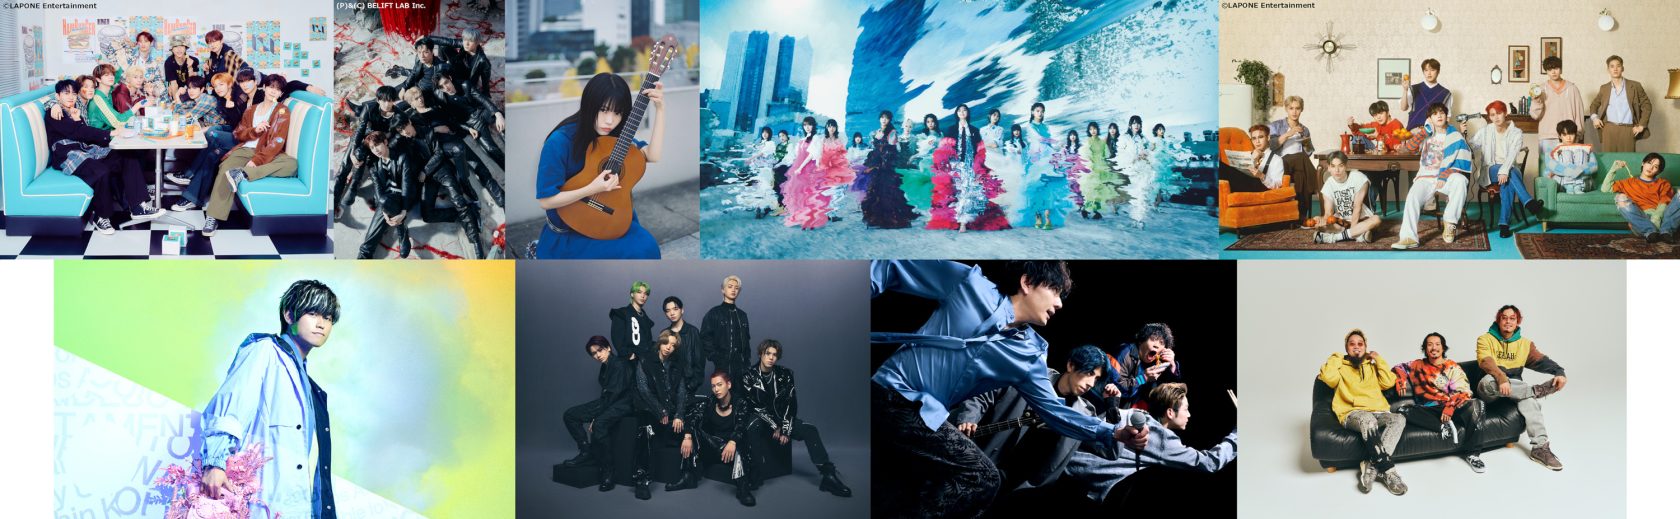 10月9日「CDTVライブ!ライブ!100回記念SP」にENHYPEN、JO1、INI、BE:FIRSTらが出演決定